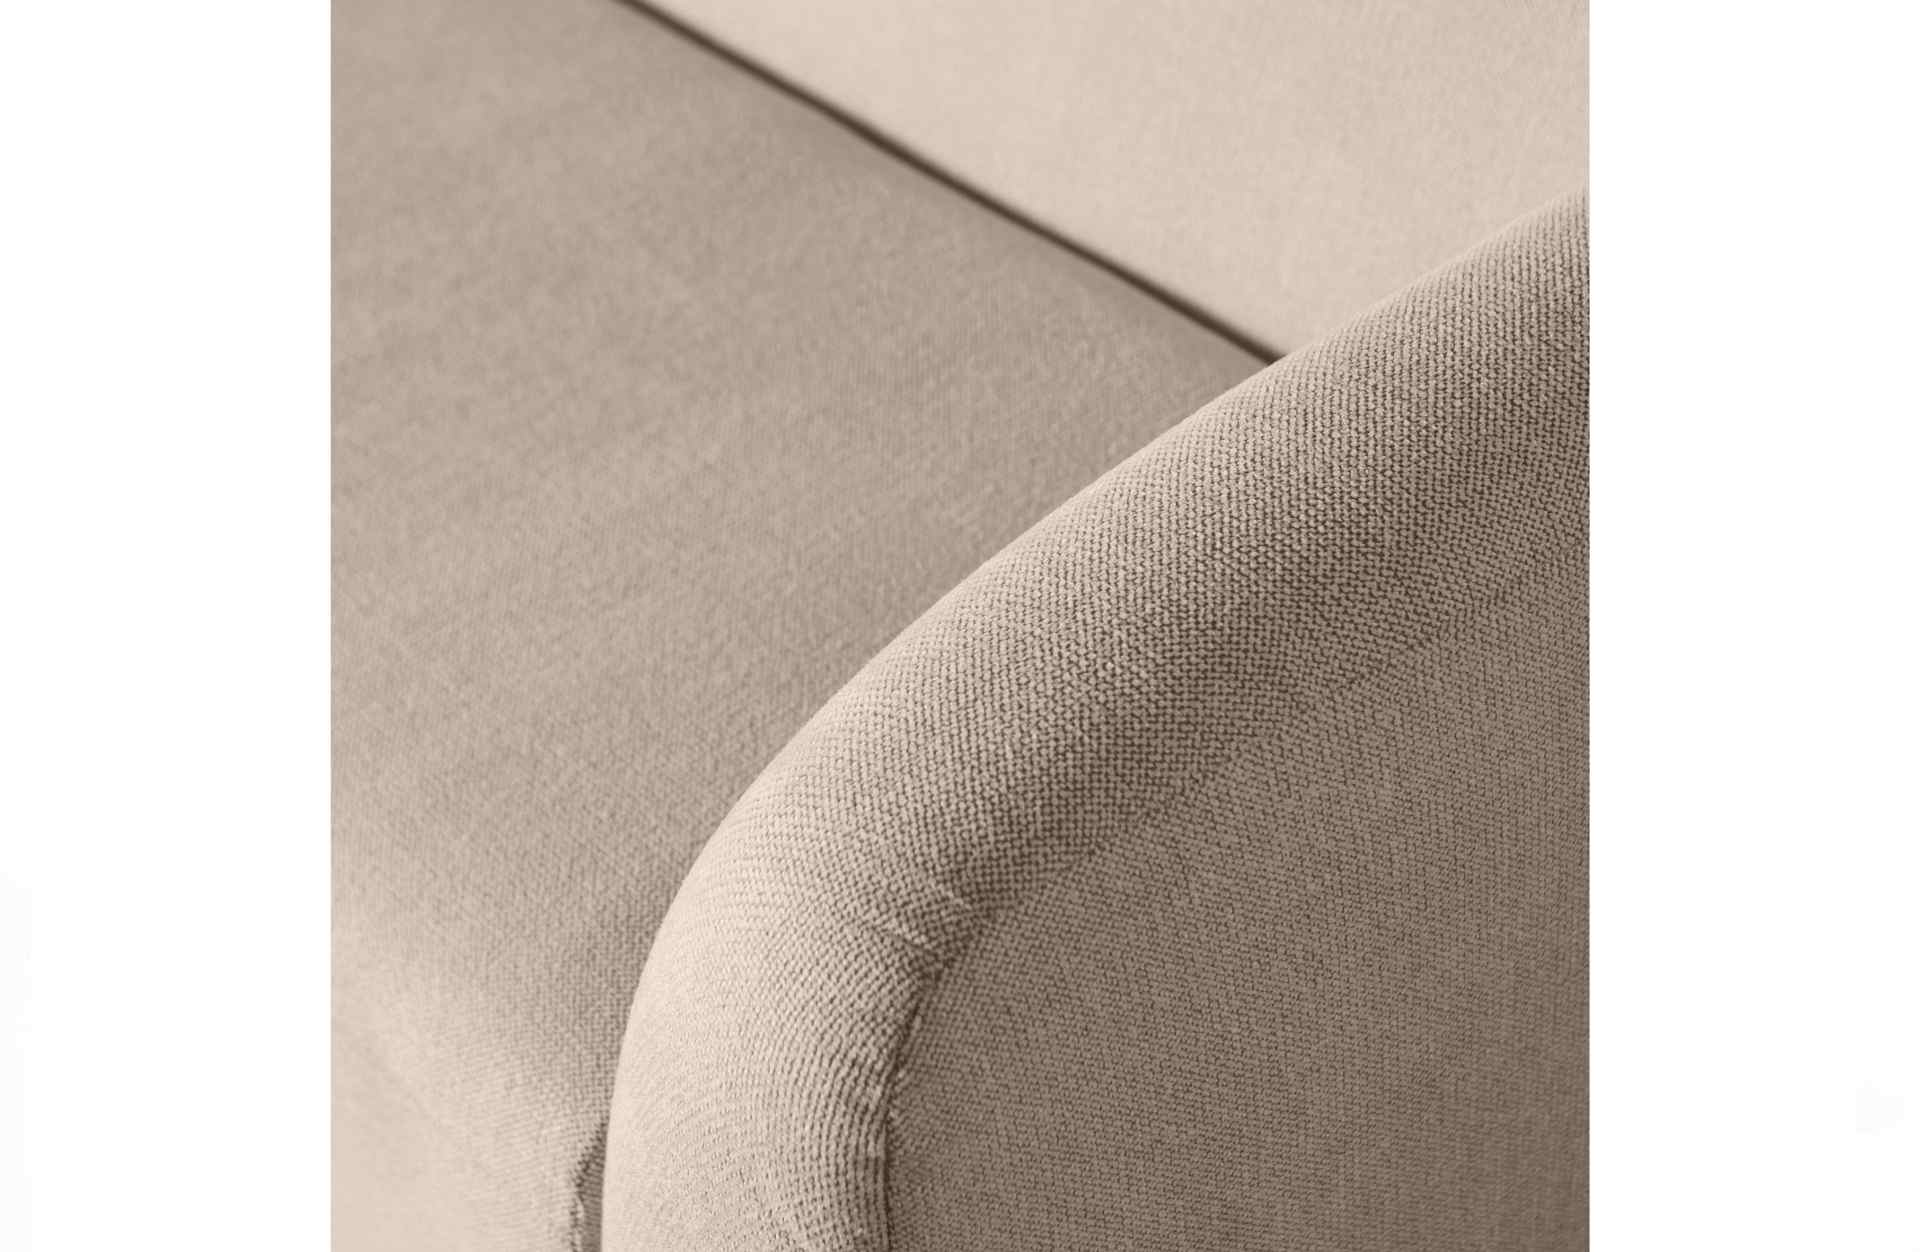 Das 3-Sitzer Sofa Sloping überzeugt mit seinem modernen Design. Gefertigt wurde es aus Kunststofffasern, welche einen einen natürlichen Farbton besitzen. Das Sofa hat eine Breite von 240 cm und eine Sitzhöhe von 43 cm.